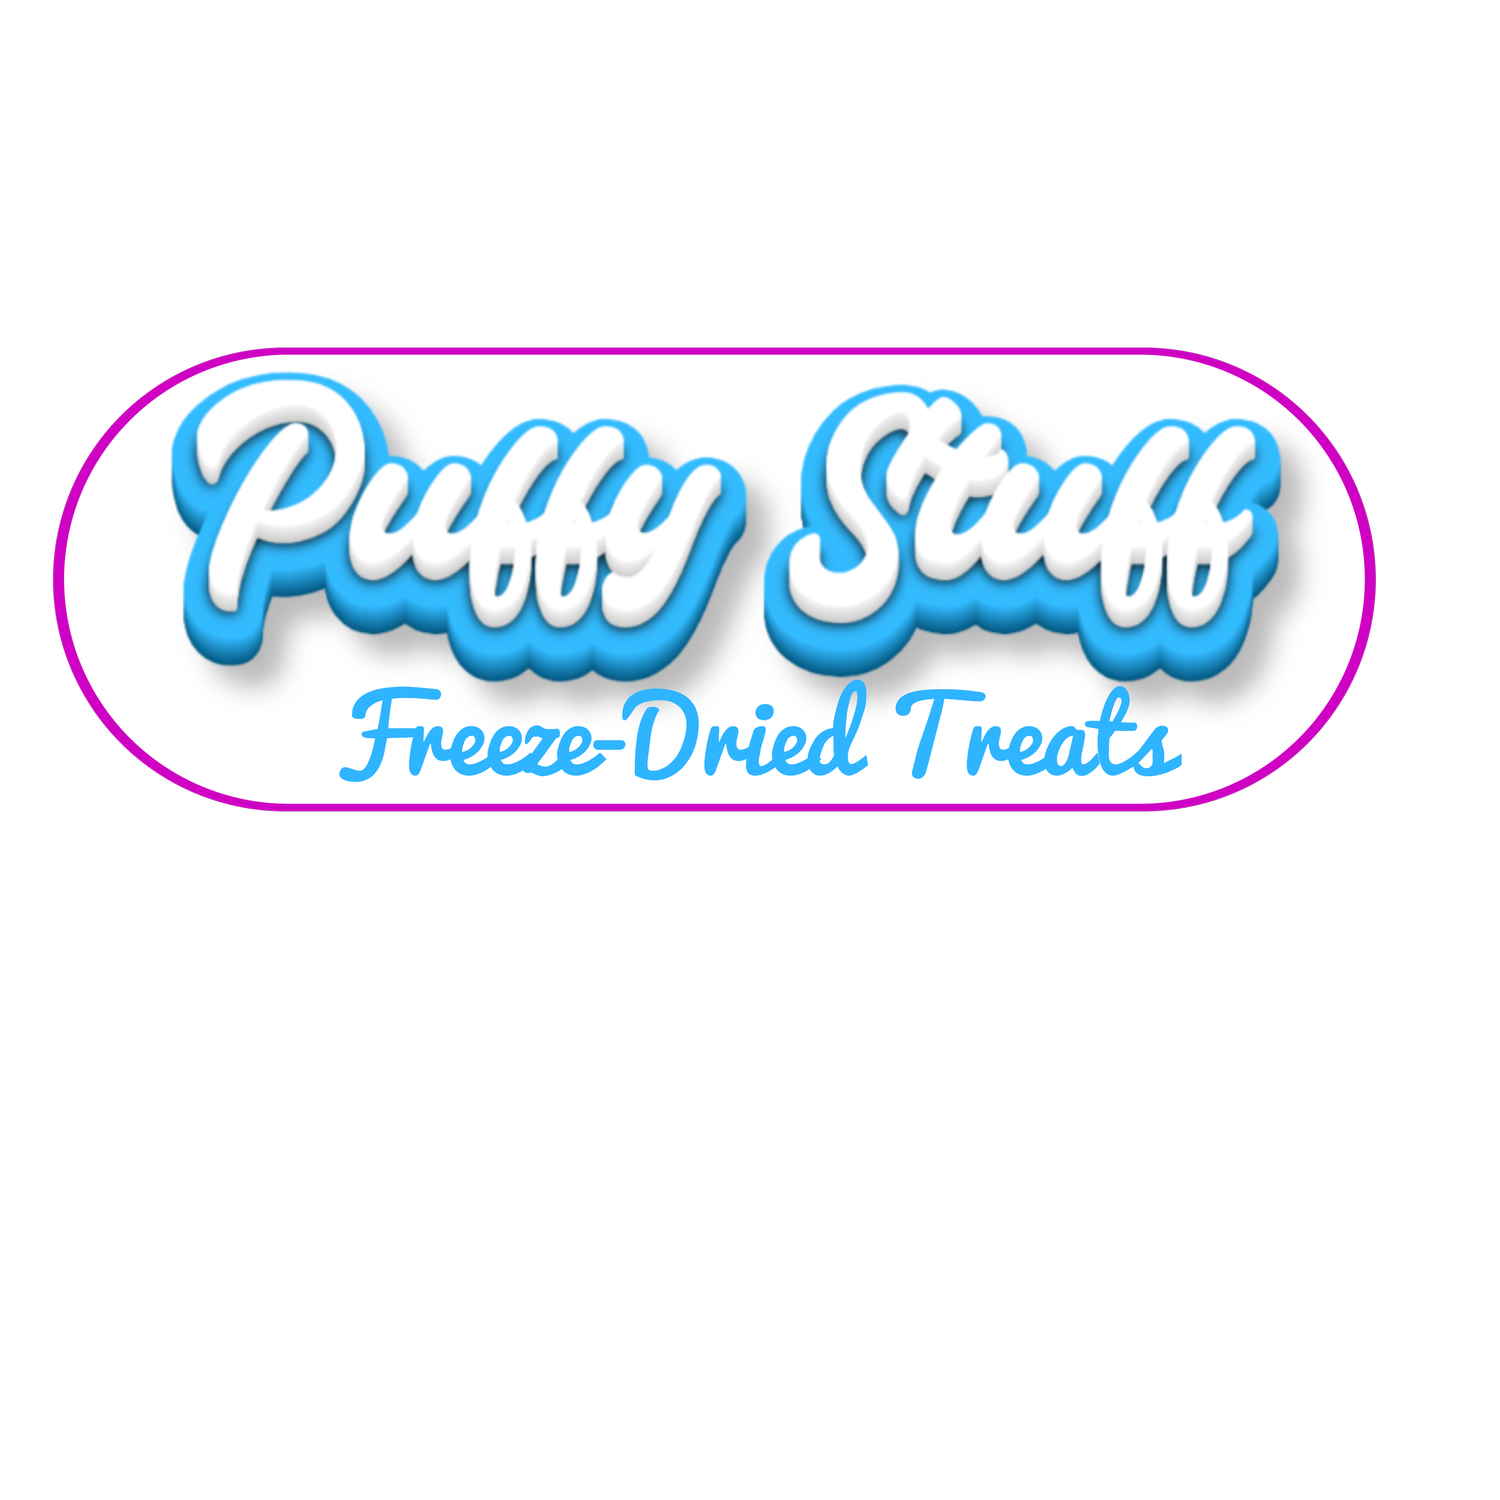 Puffy Stuff Freeze Dried Treats